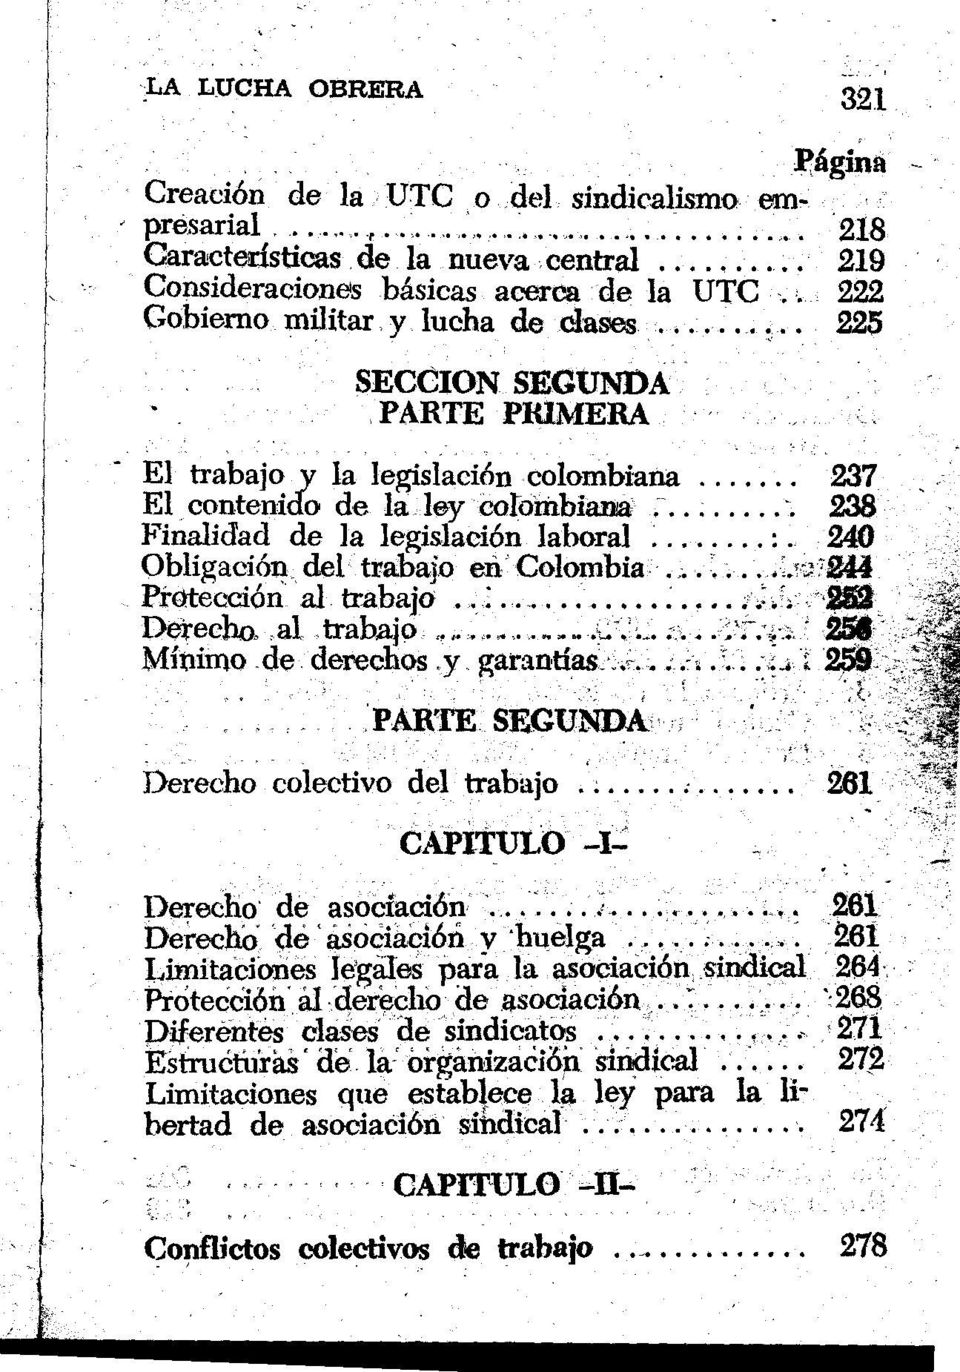 240 Obligación del trabajo en Colombia... -244 Protección al trabajo..i... 2102 Derecho, al trabajo».u.'... 250 Mínimo de derechos y garantías...... 259 PARTE SEGUNDA Derecho colectivo del trabajo.